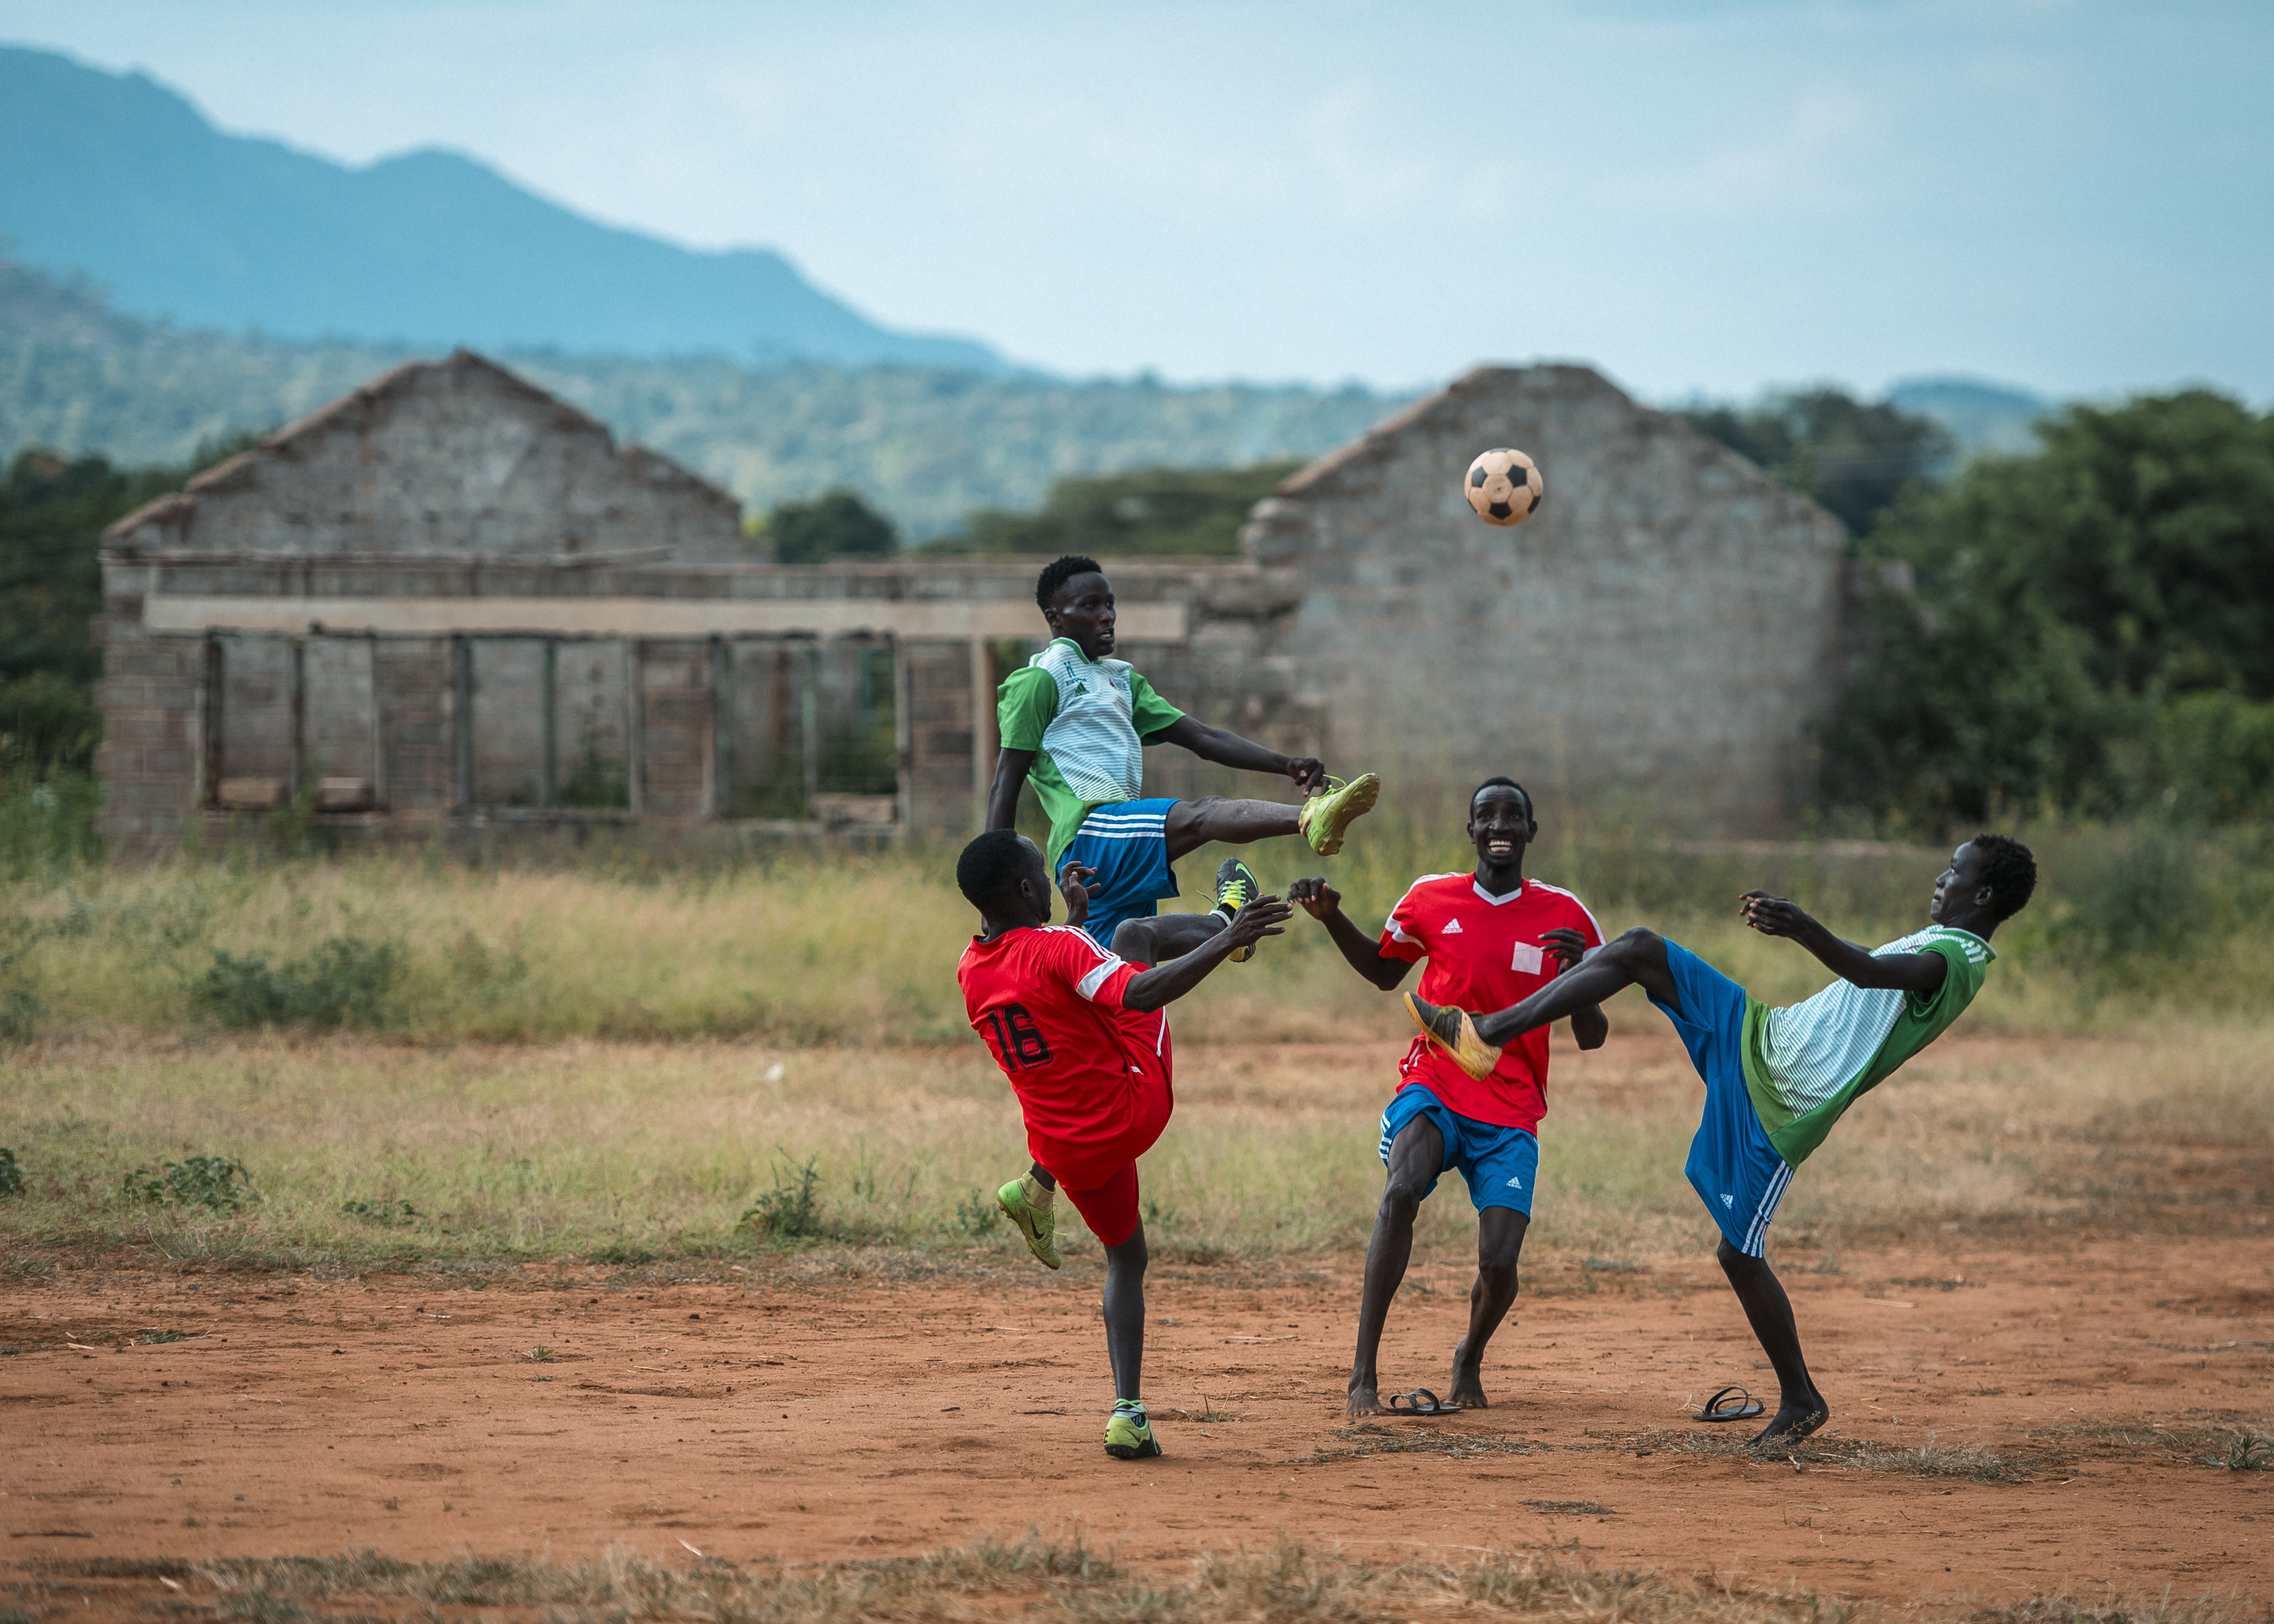 Neljä poikaa pelaa jalkapalloa.